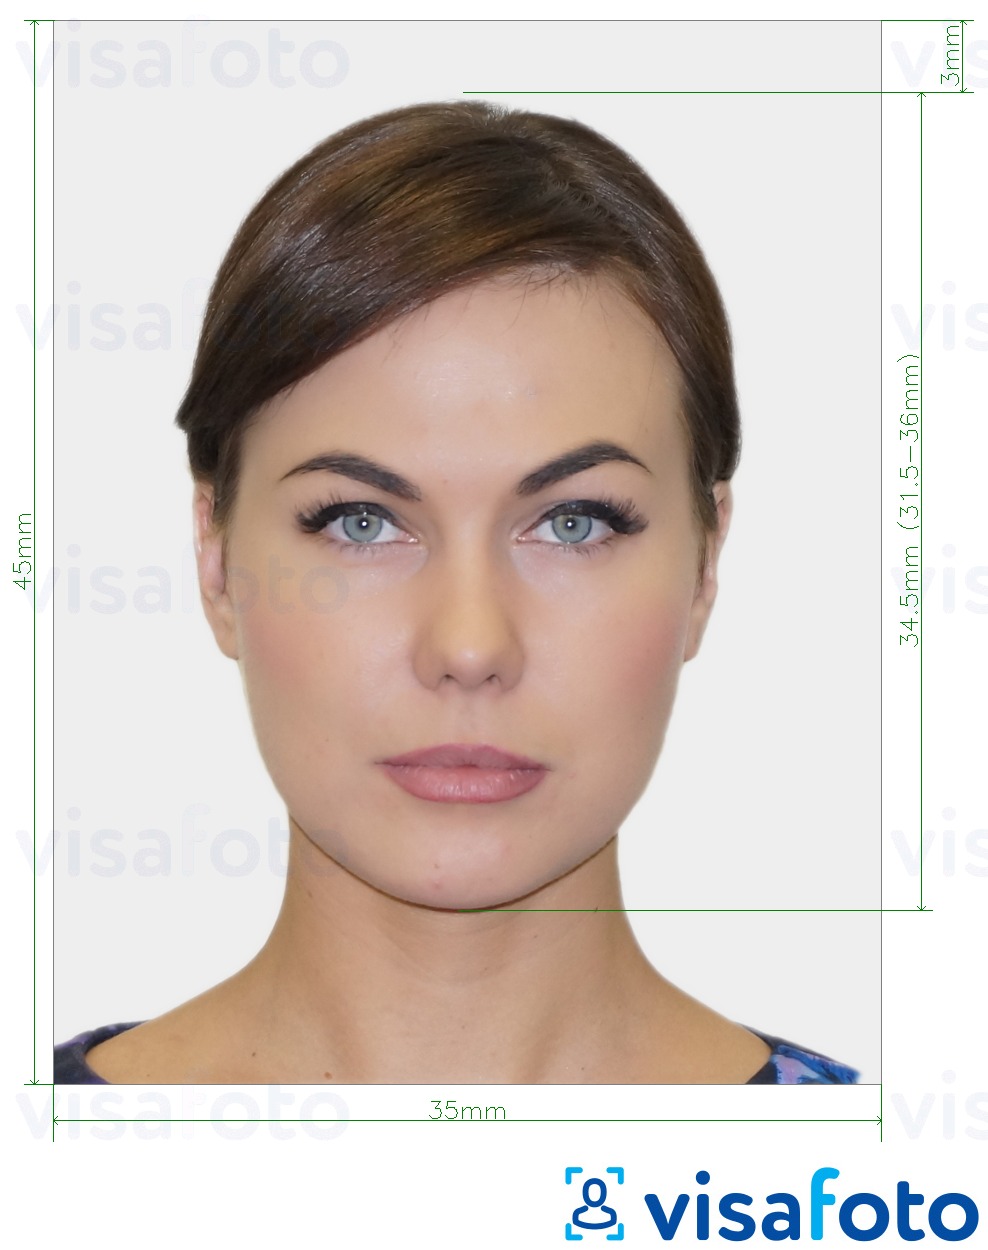 Voorbeeld van foto voor Zwitserse identiteitskaart 35x45 mm (3,5x4,5 cm) met exacte maatspecificatie